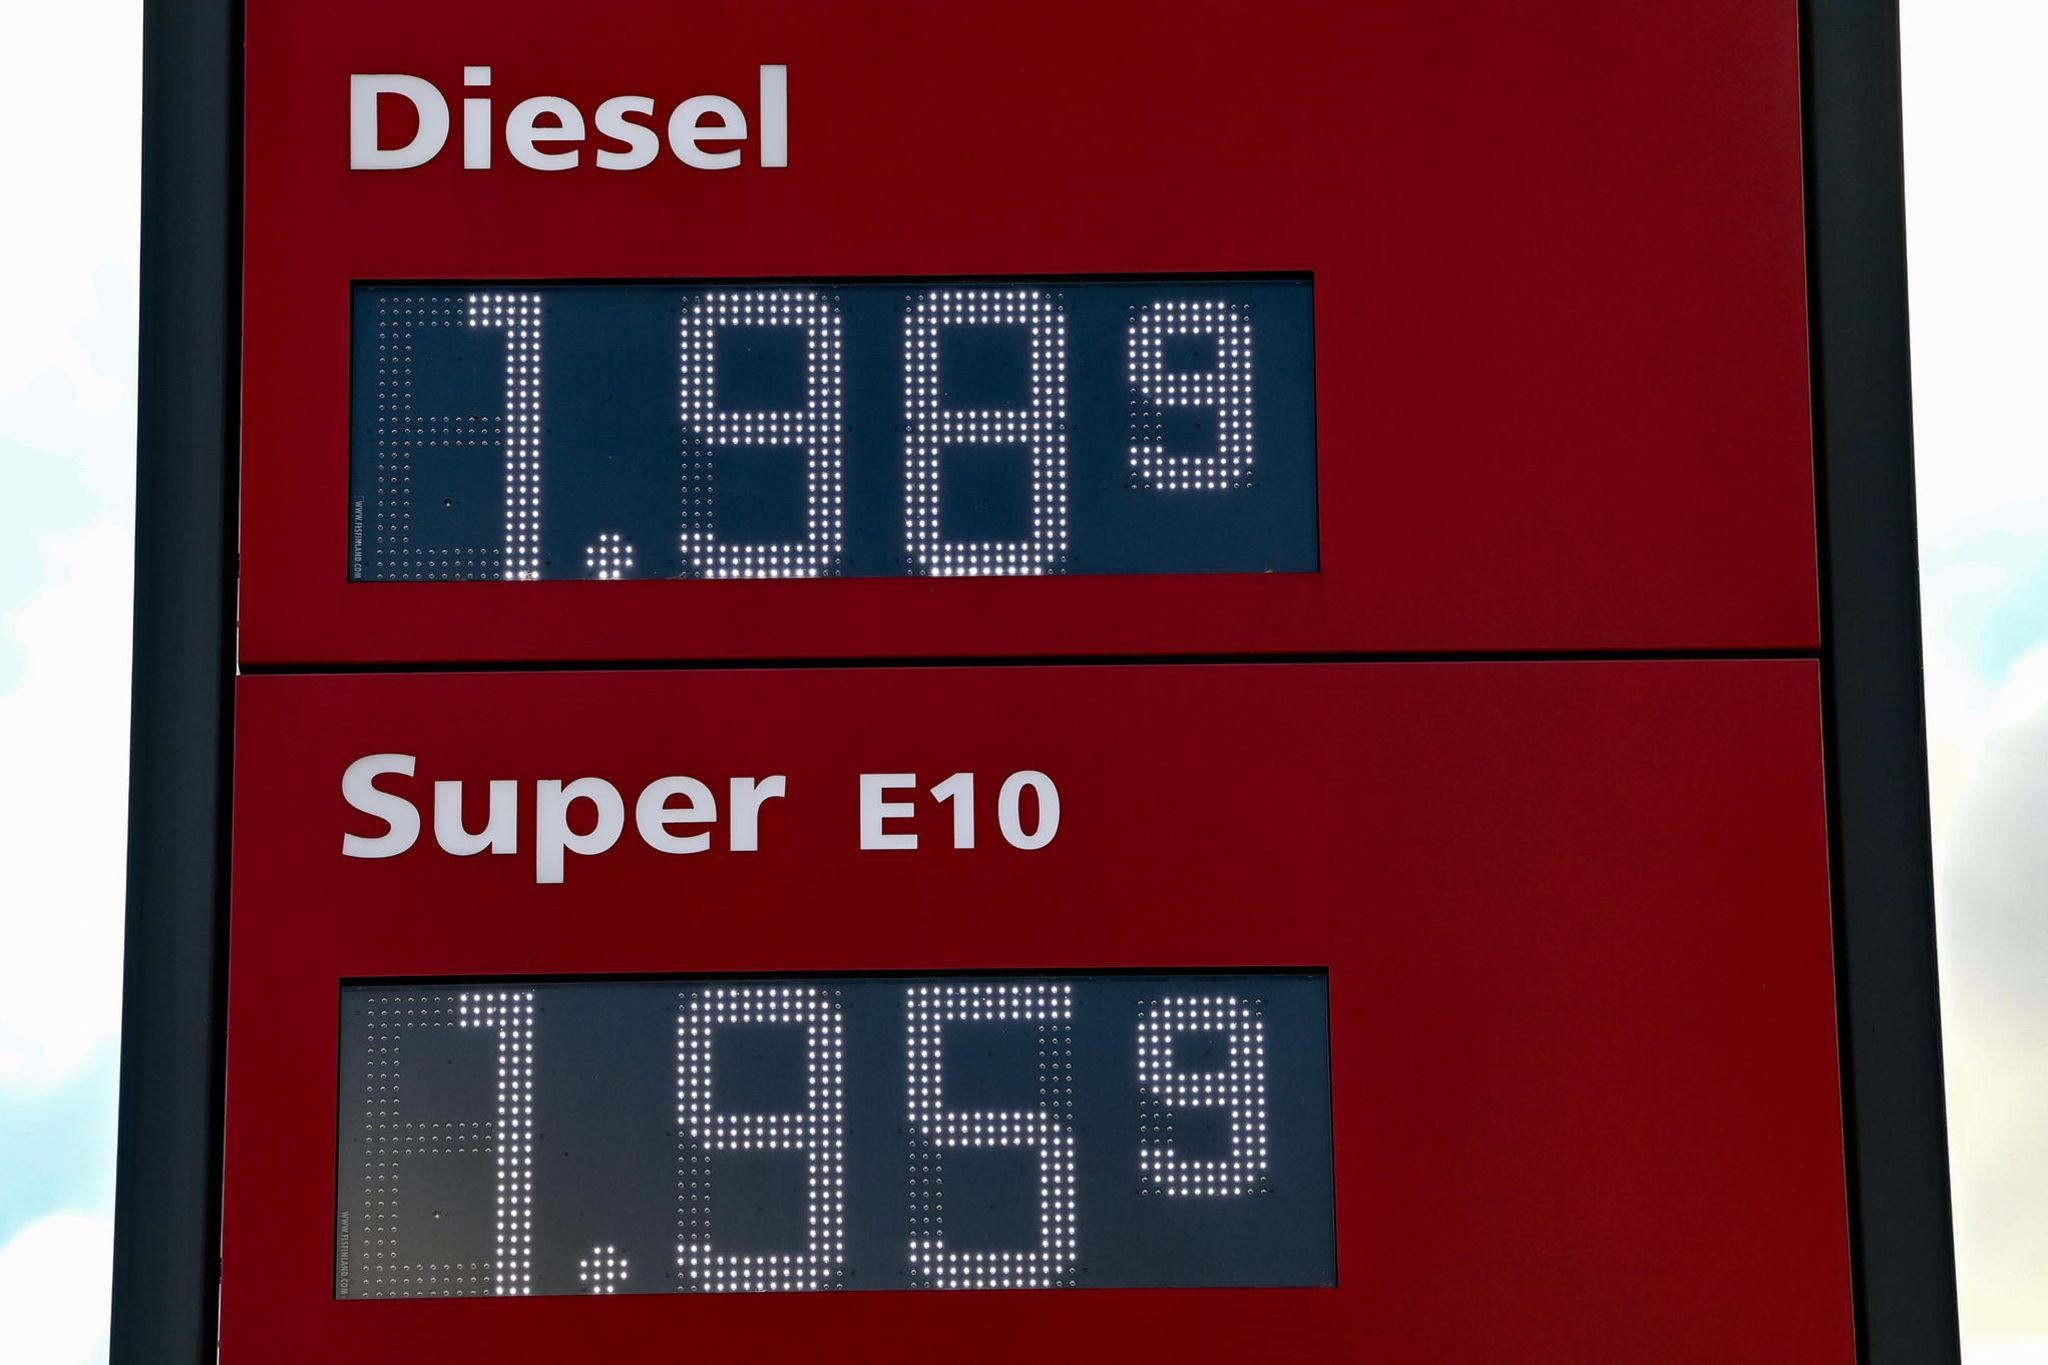 Warum ist Diesel plötzlich teurer als Benzin? - [GEO]